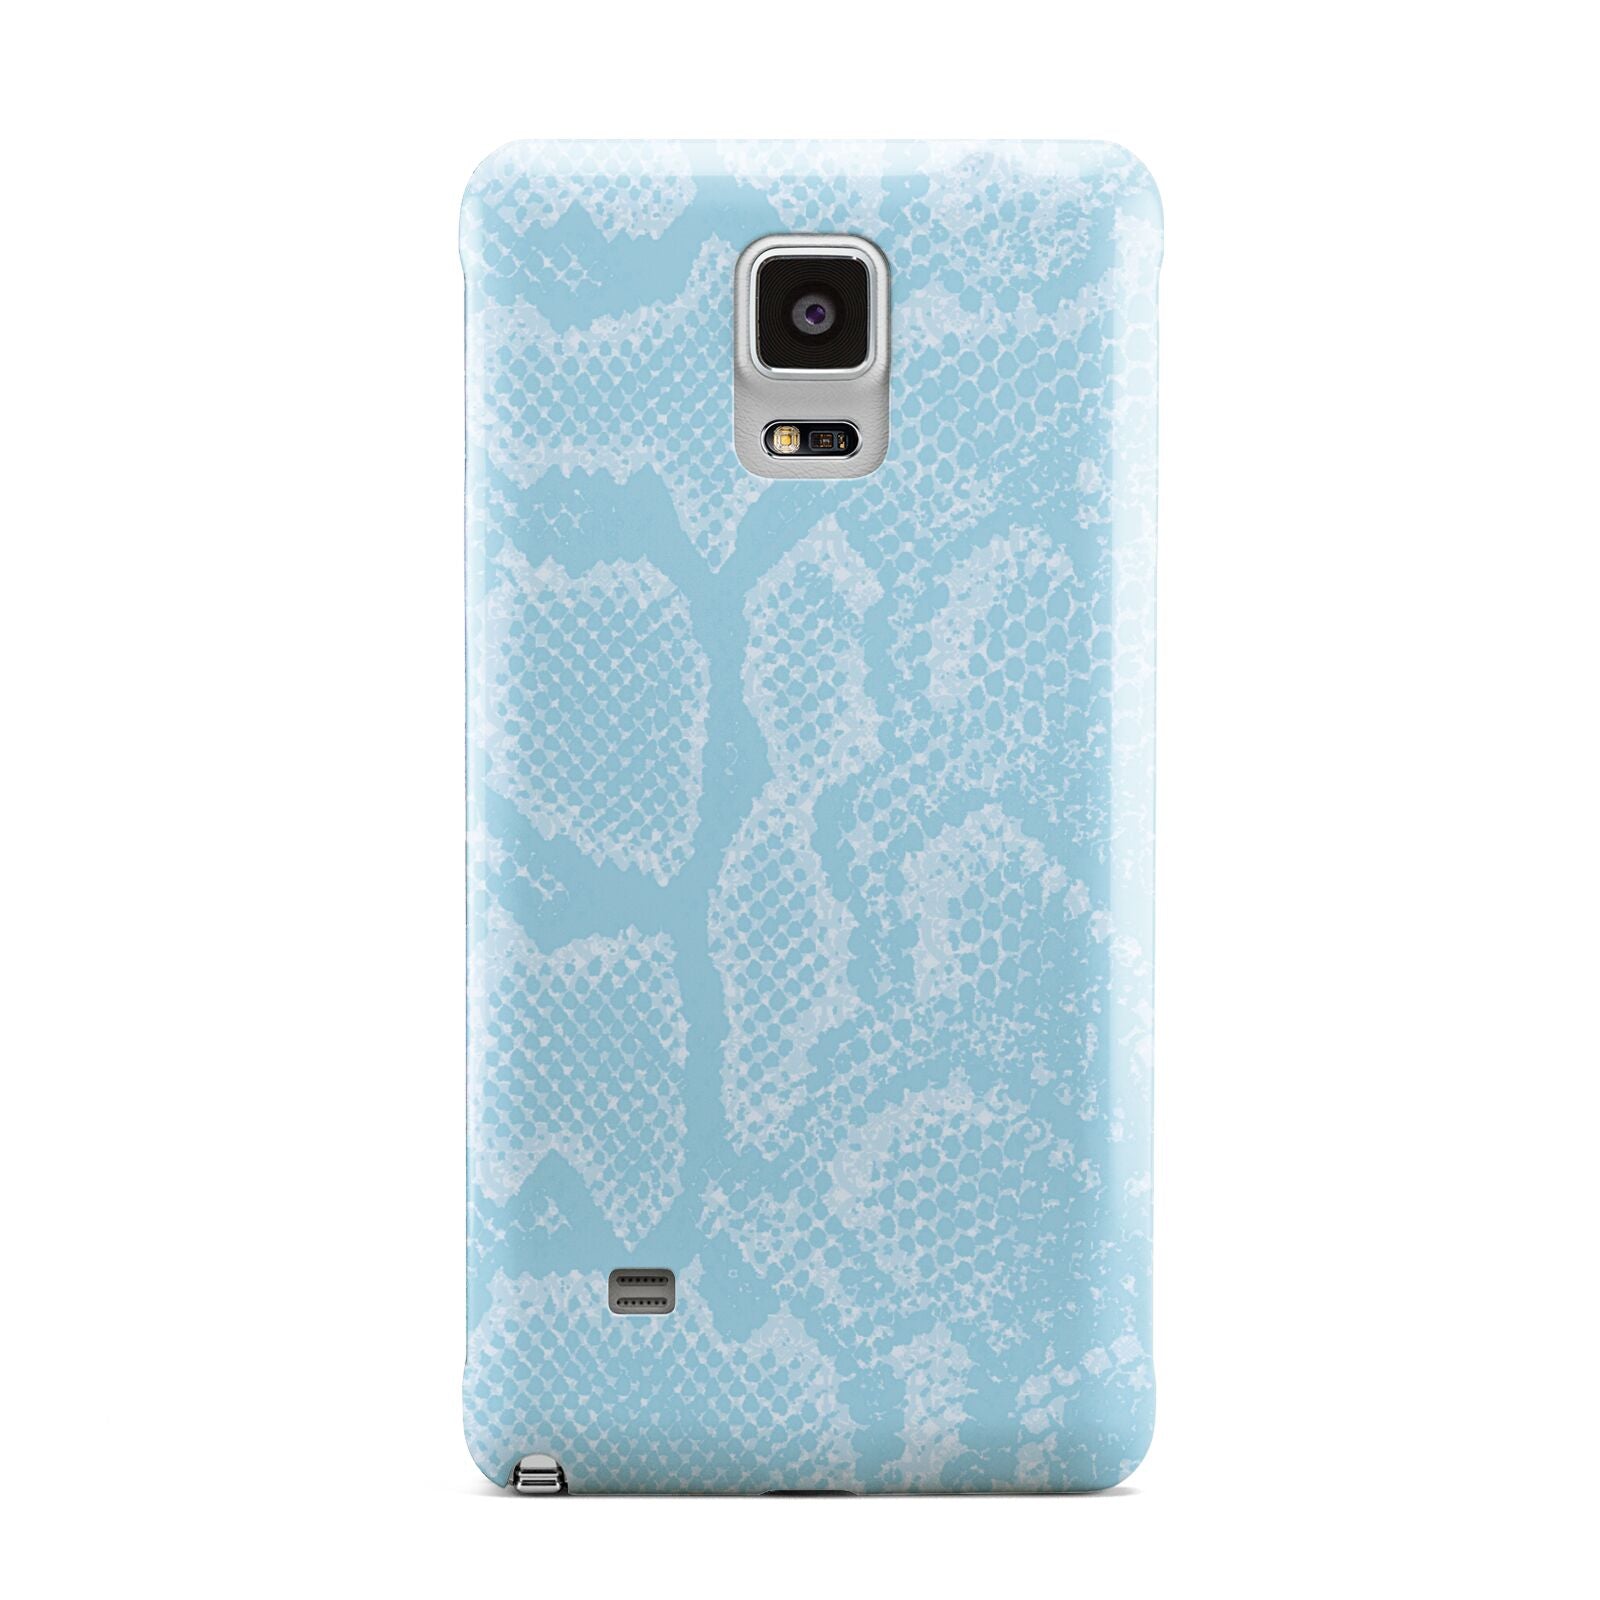 Blue Snakeskin Samsung Galaxy Note 4 Case